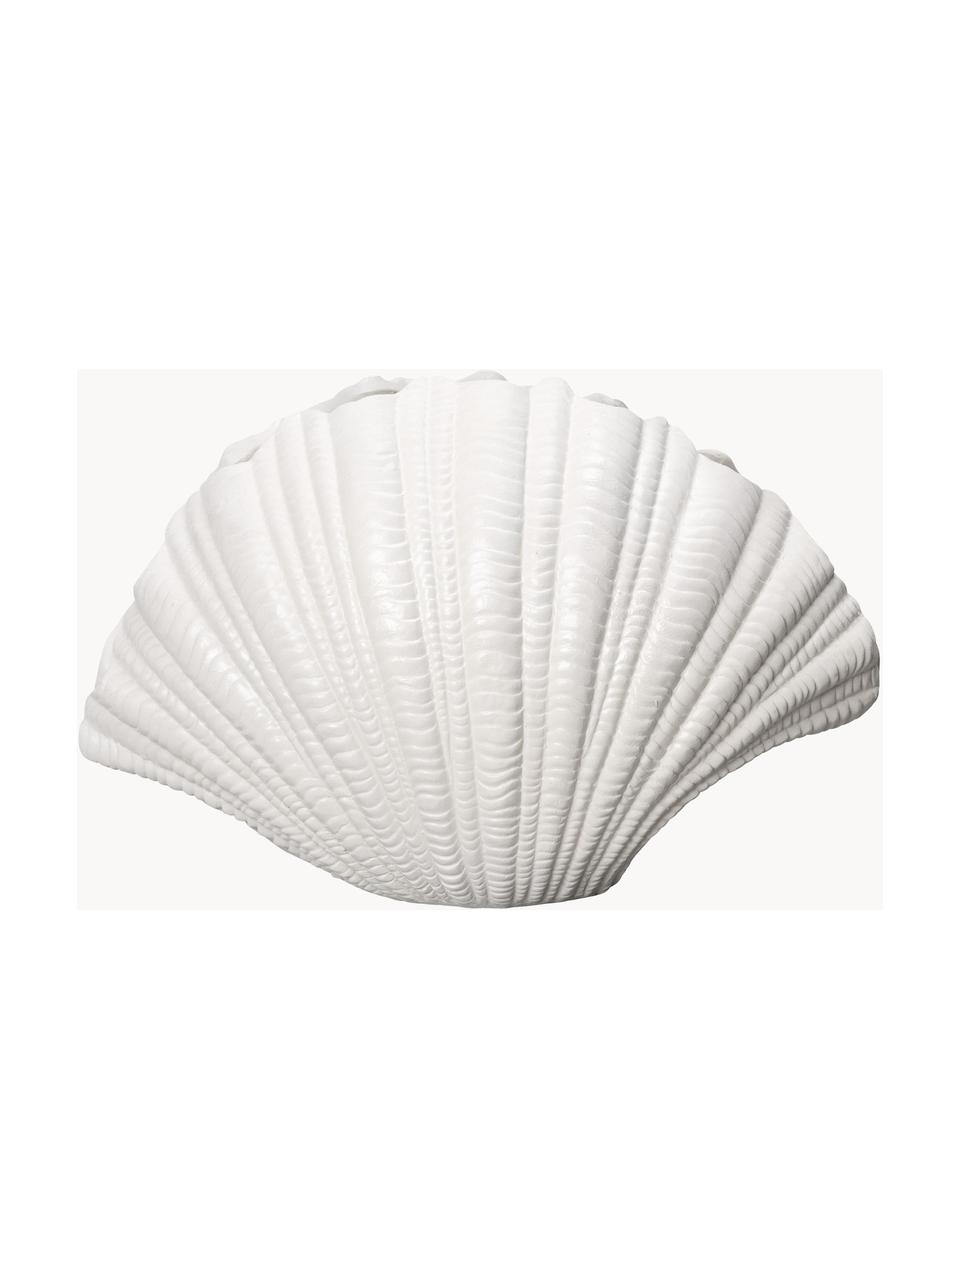 Jarrón grande de diseño Shell, Plástico, Blanco, An 31 x Al 21 cm